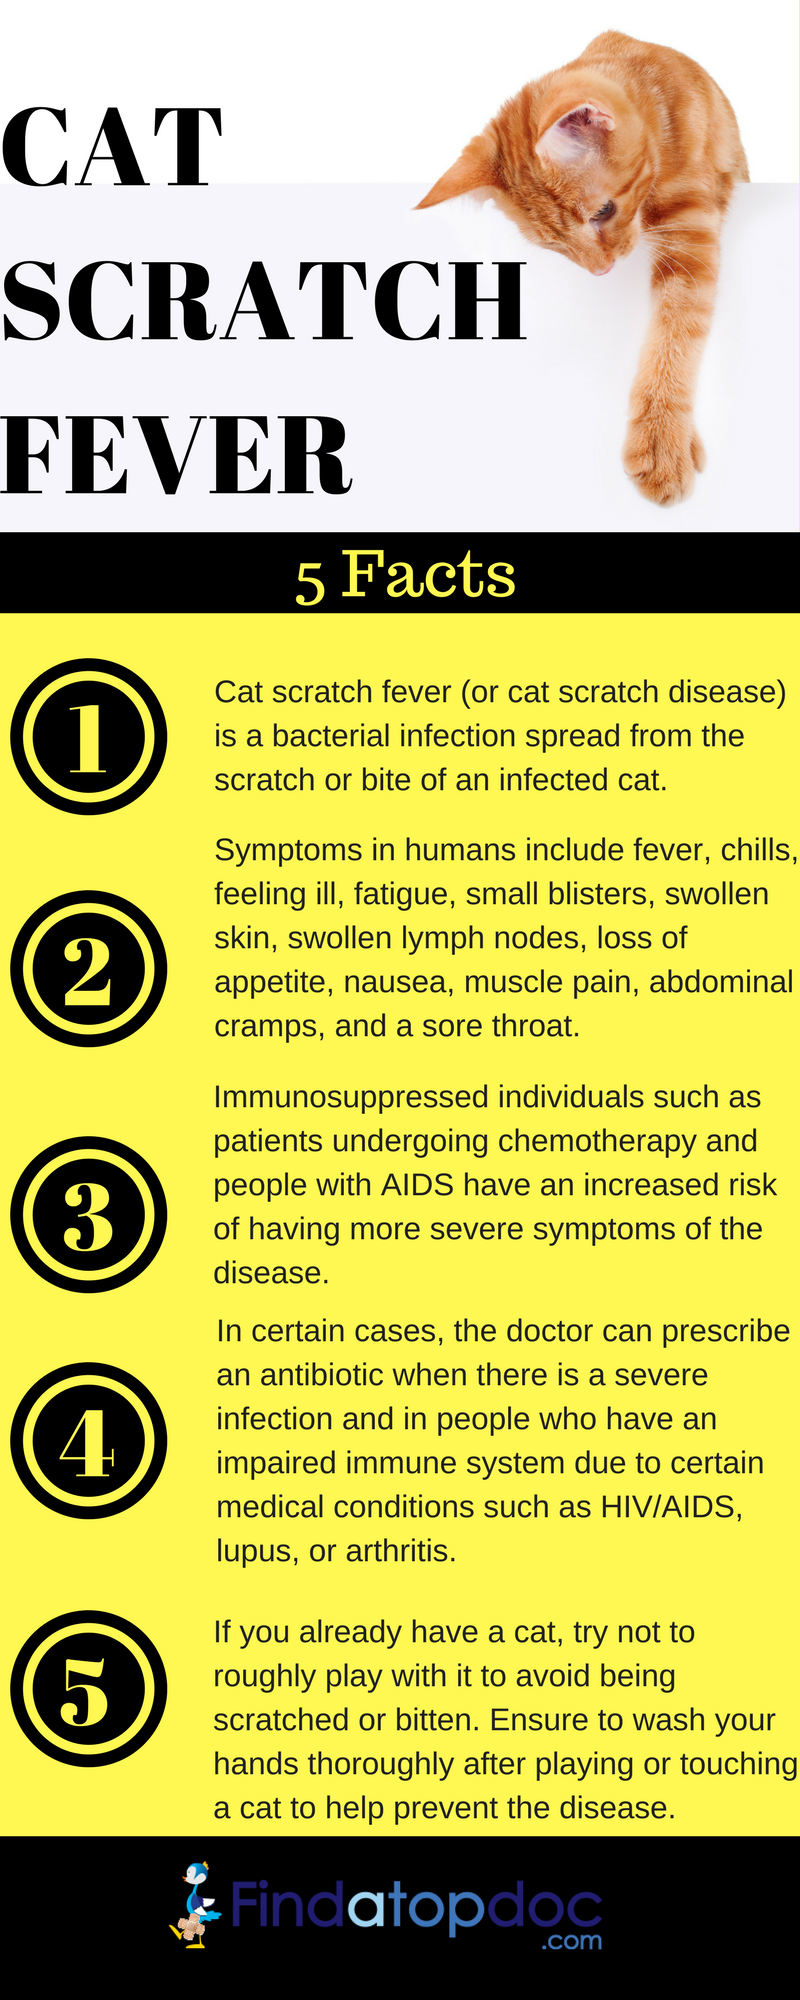 treatment for bartonella in cats